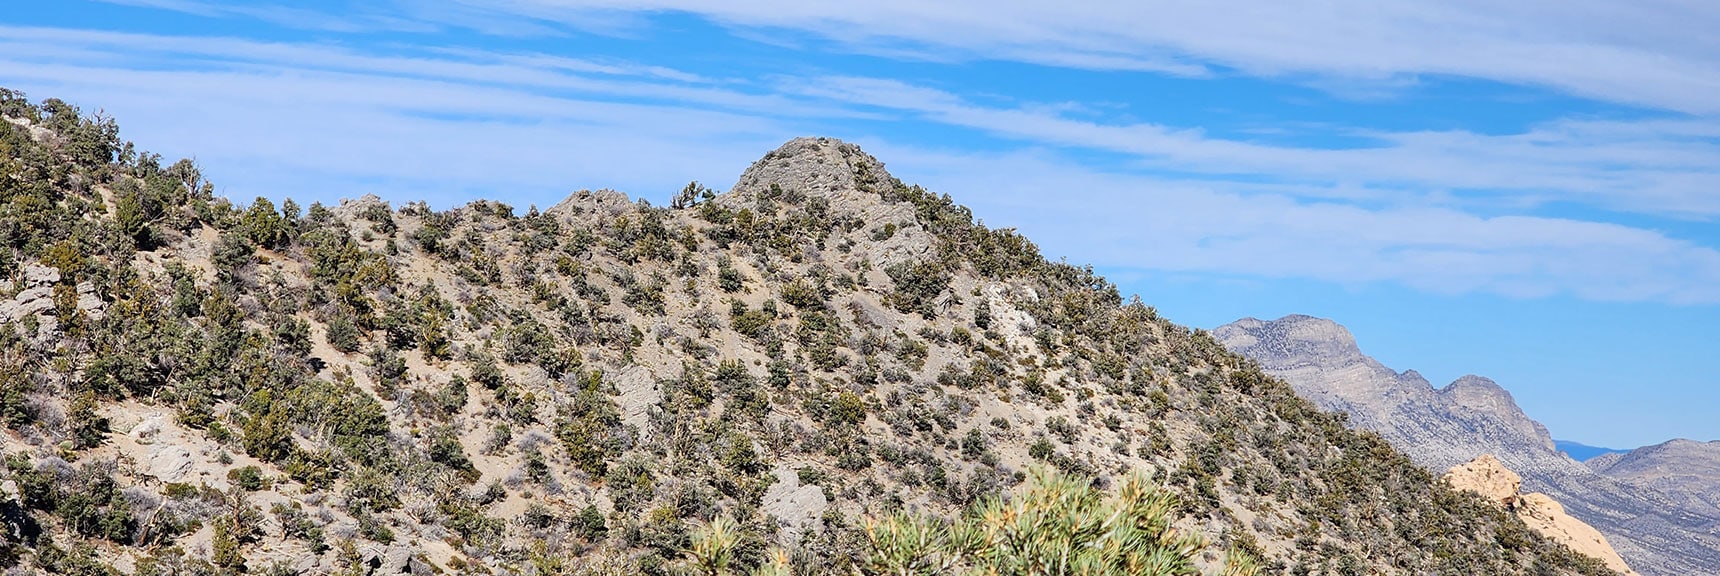 North Peak. La Madre Mountains Background | Mid Upper Crest Ridgeline | Rainbow Mountain Wilderness, Nevada